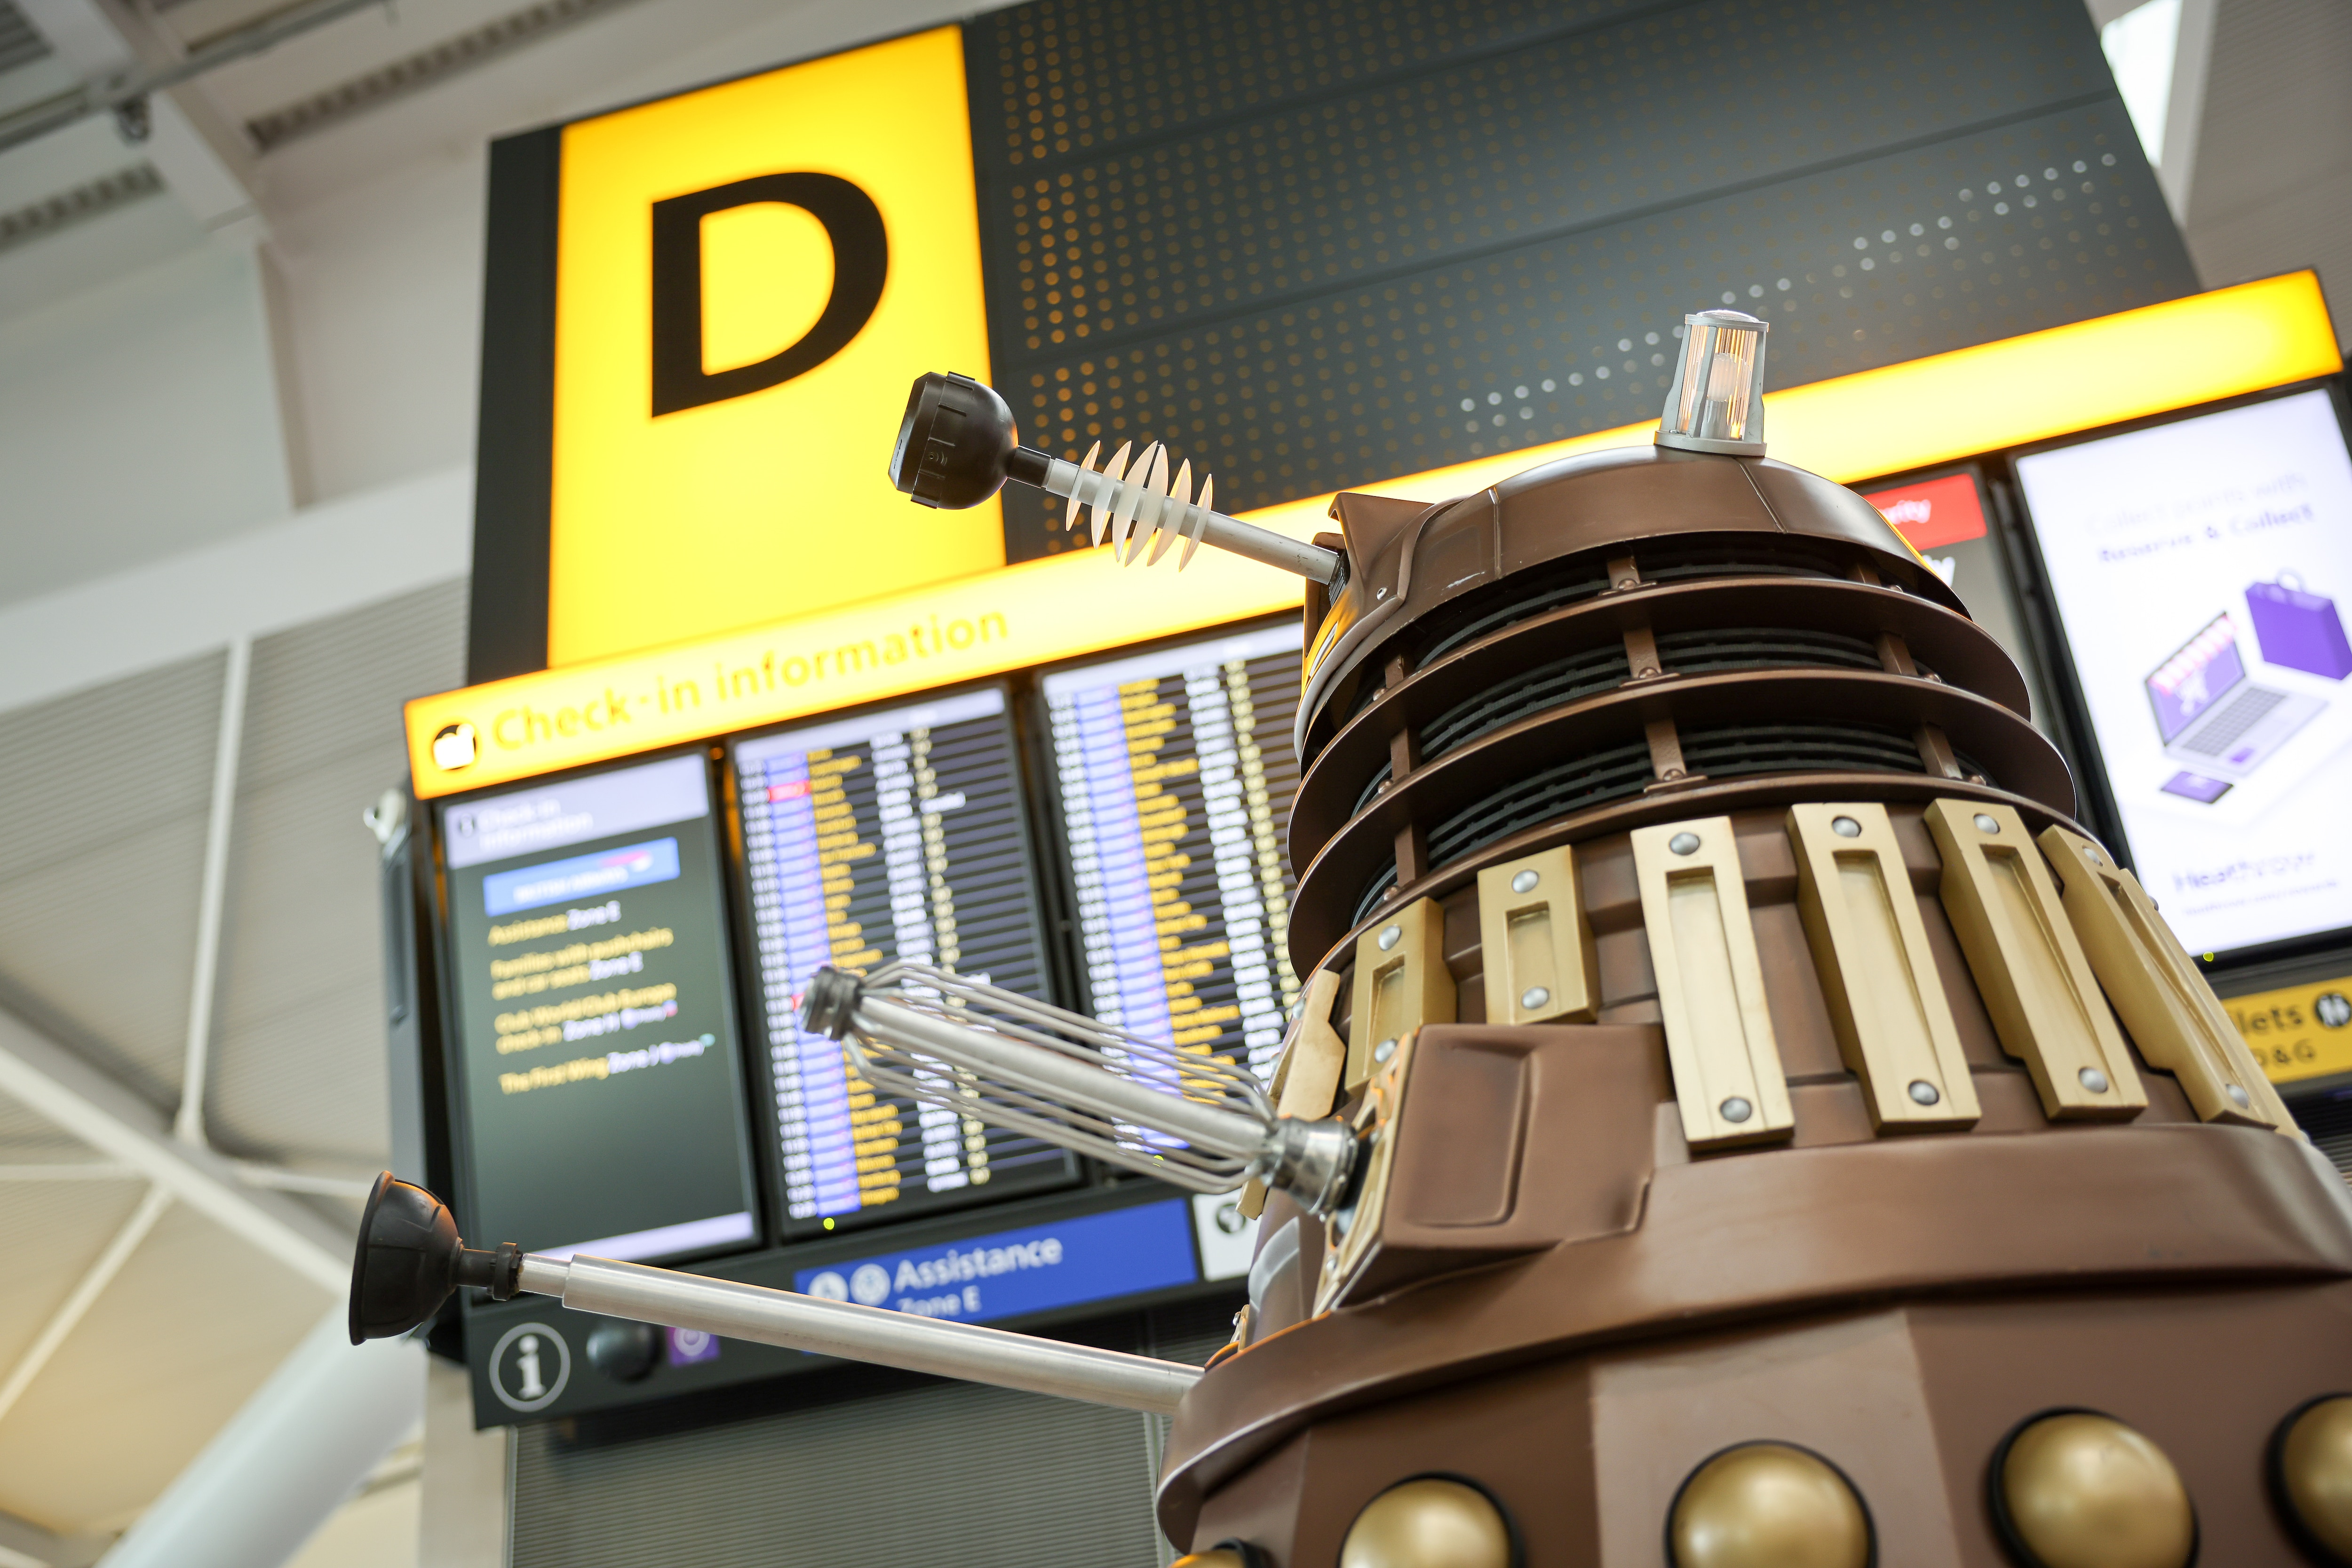 A Dalek in Terminal 5